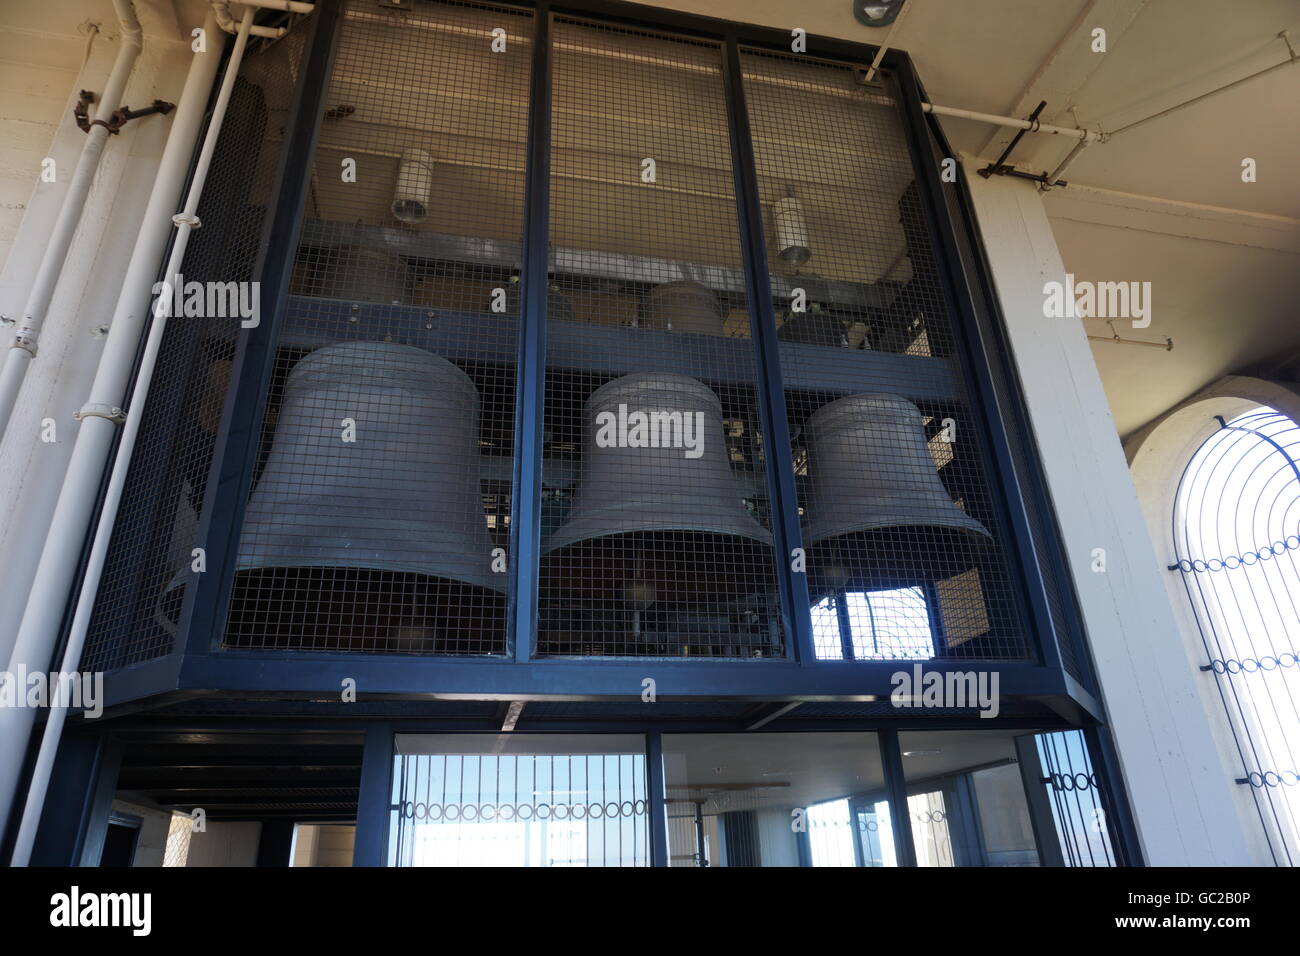 Die Glocken der Hoover-Turm an der Stanford University - nur zur redaktionellen Nutzung Stockfoto